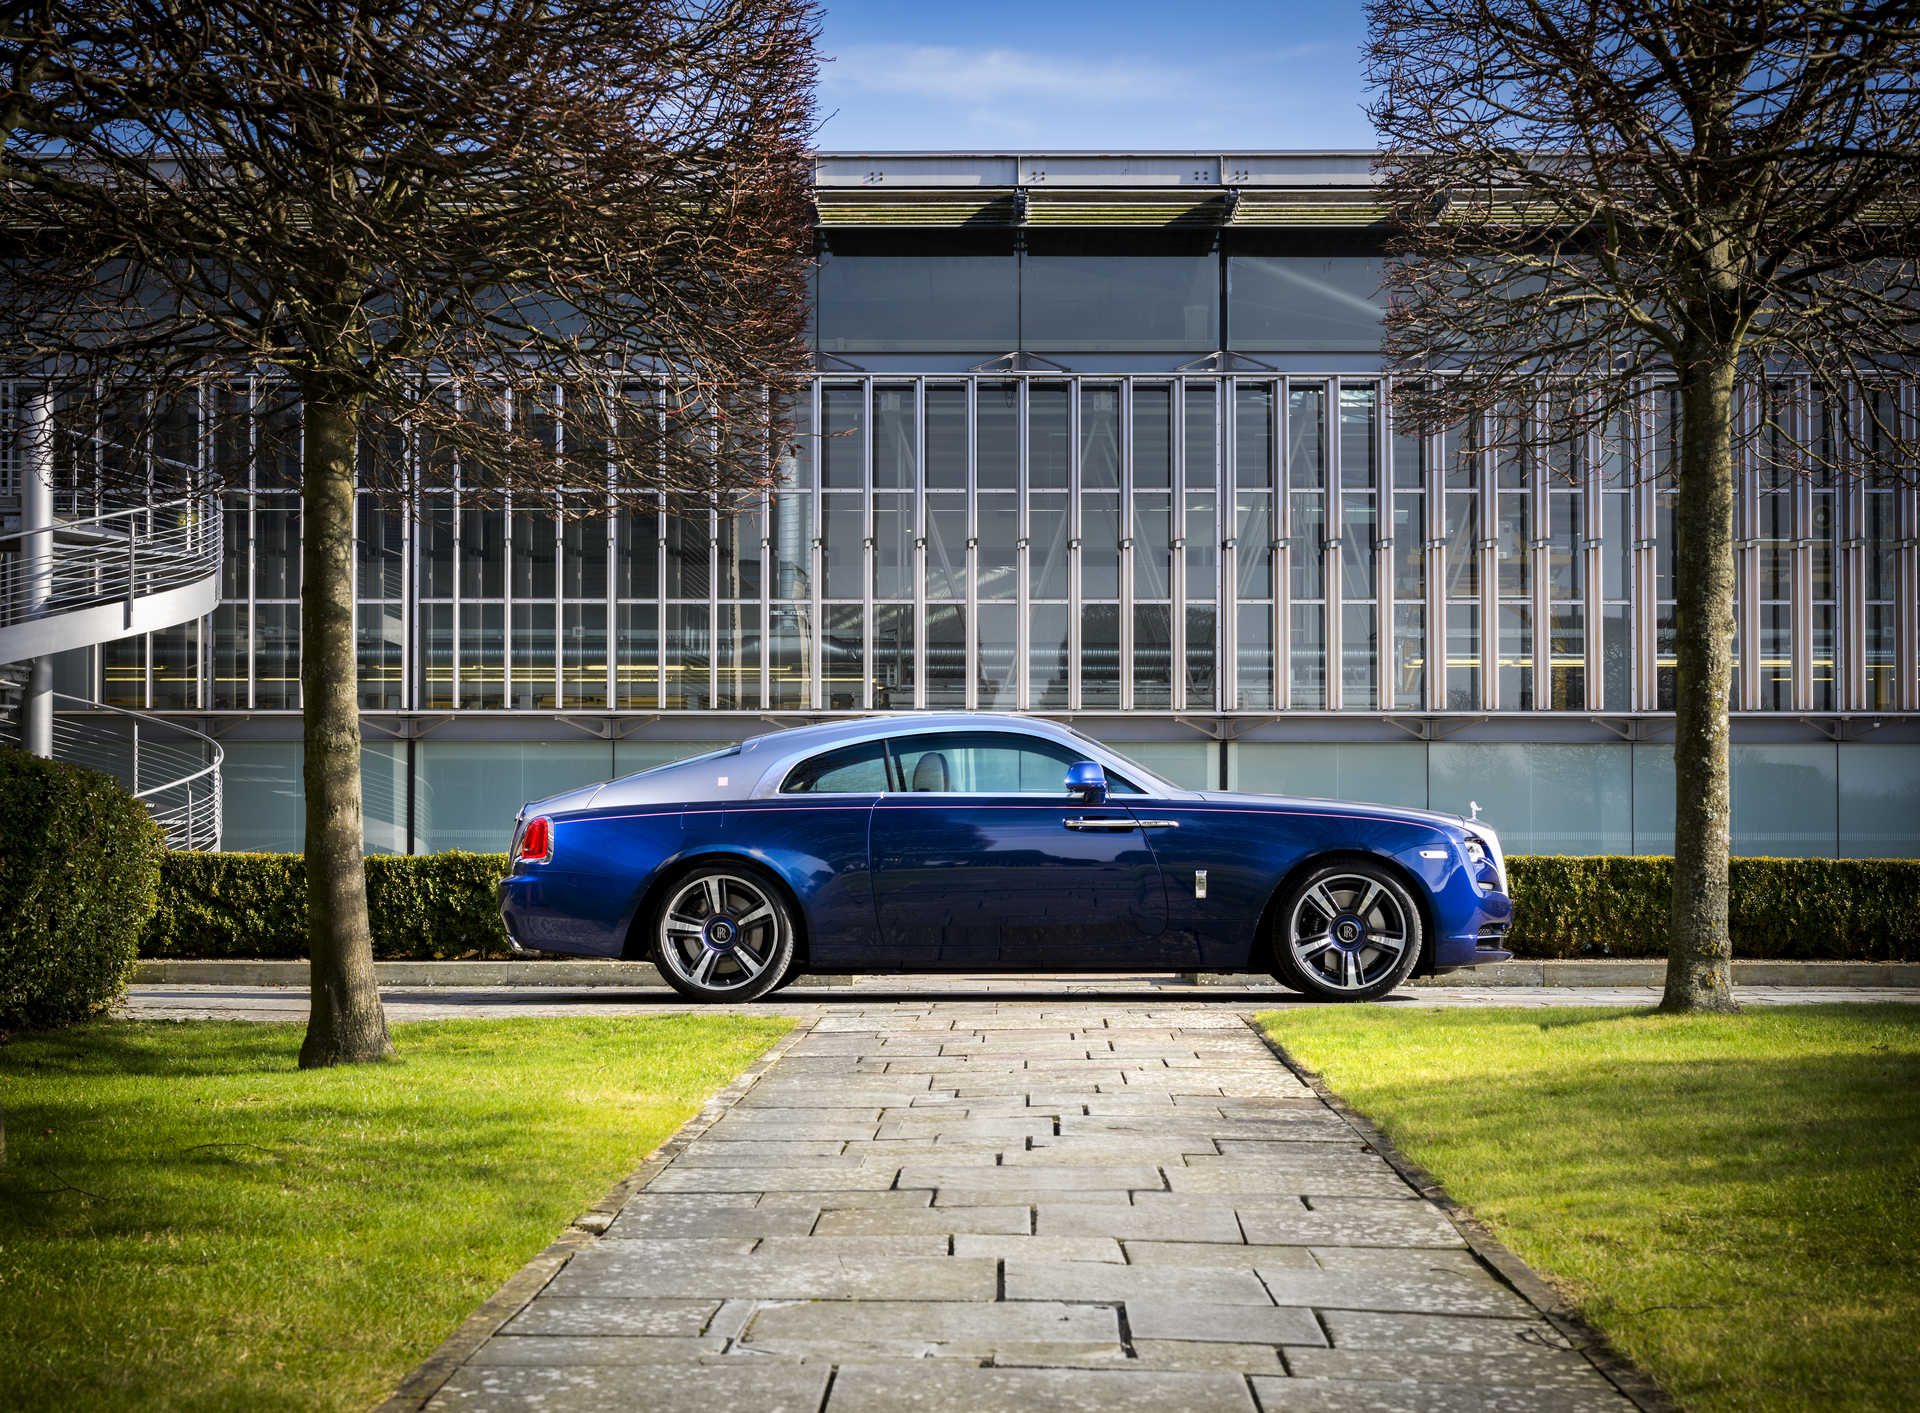 Rolls Royce Wraith Busan Edition